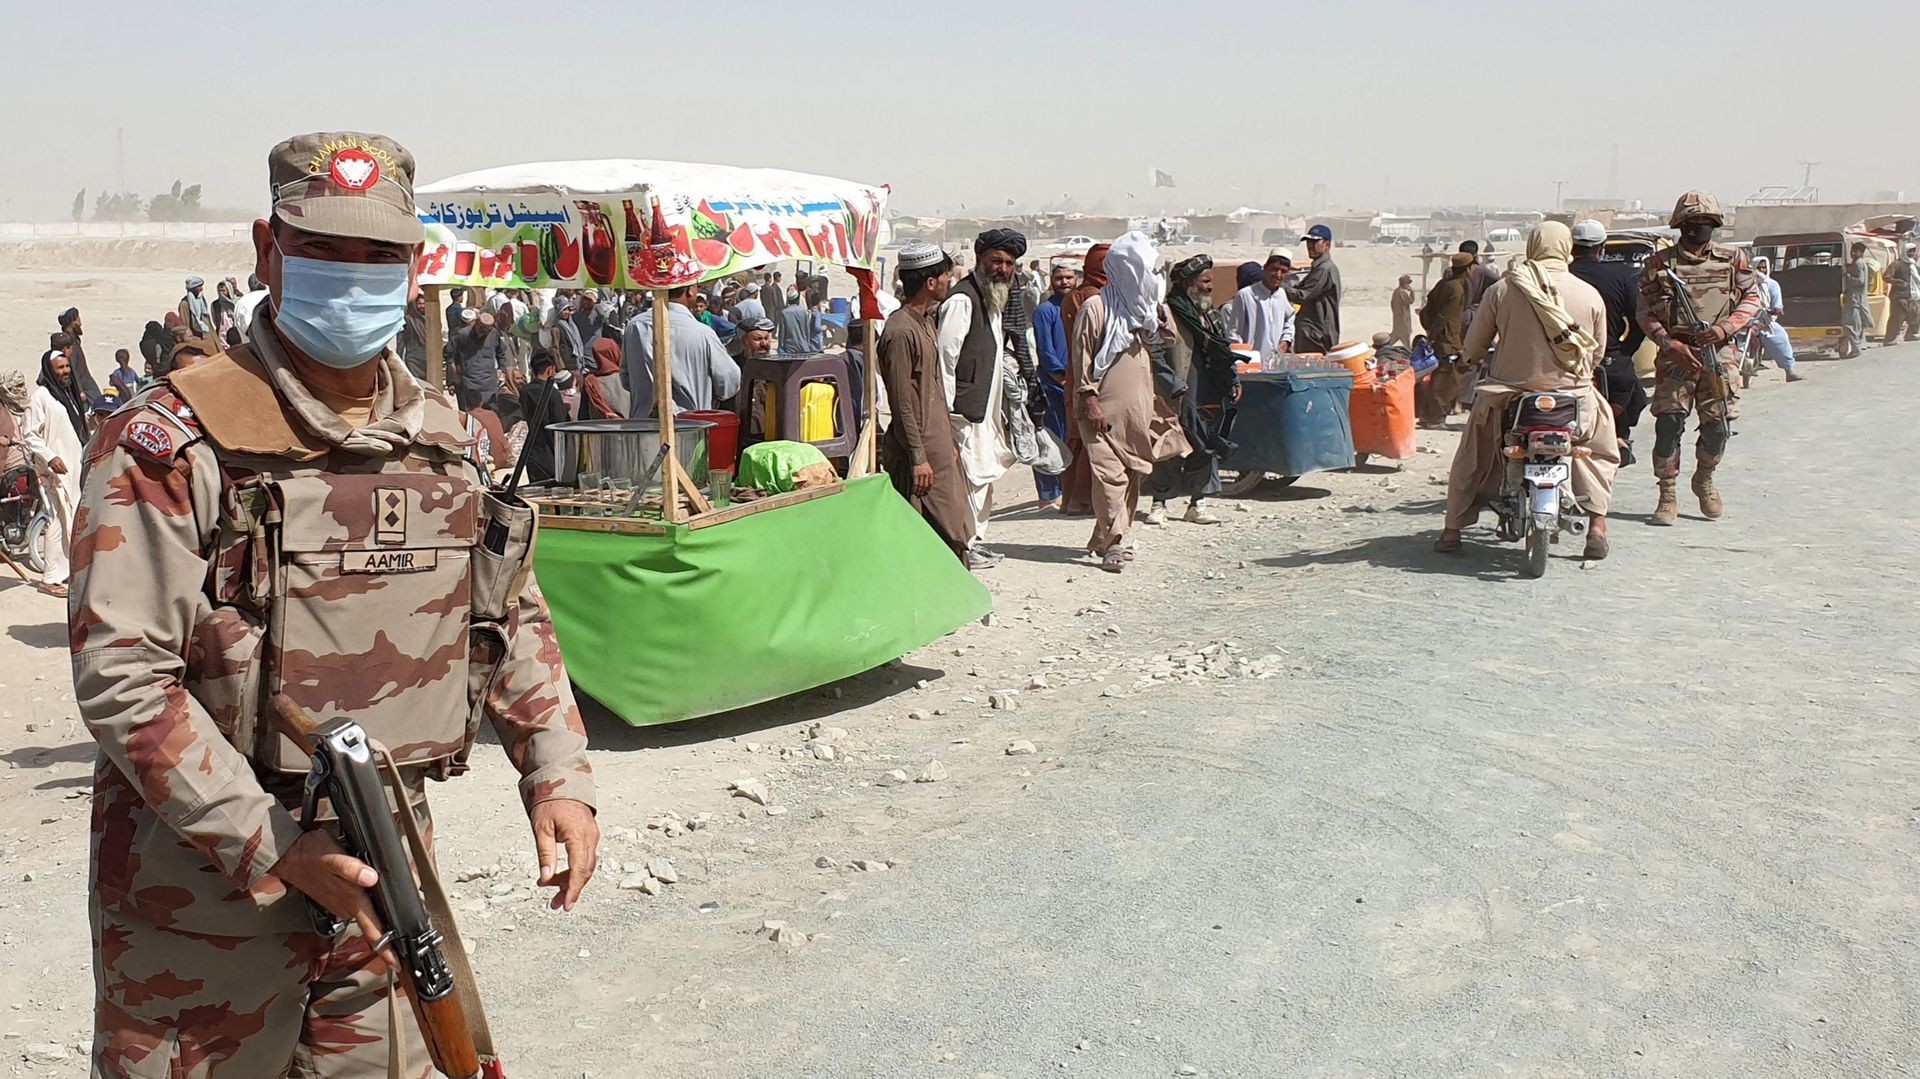 Un soldat de l’armée patrouille devant des personnes bloquées à la frontière de Chaman le 7 août 2021, après que les talibans ont pris le contrôle de la ville frontalière afghane lors d’une offensive rapide à travers le pays.